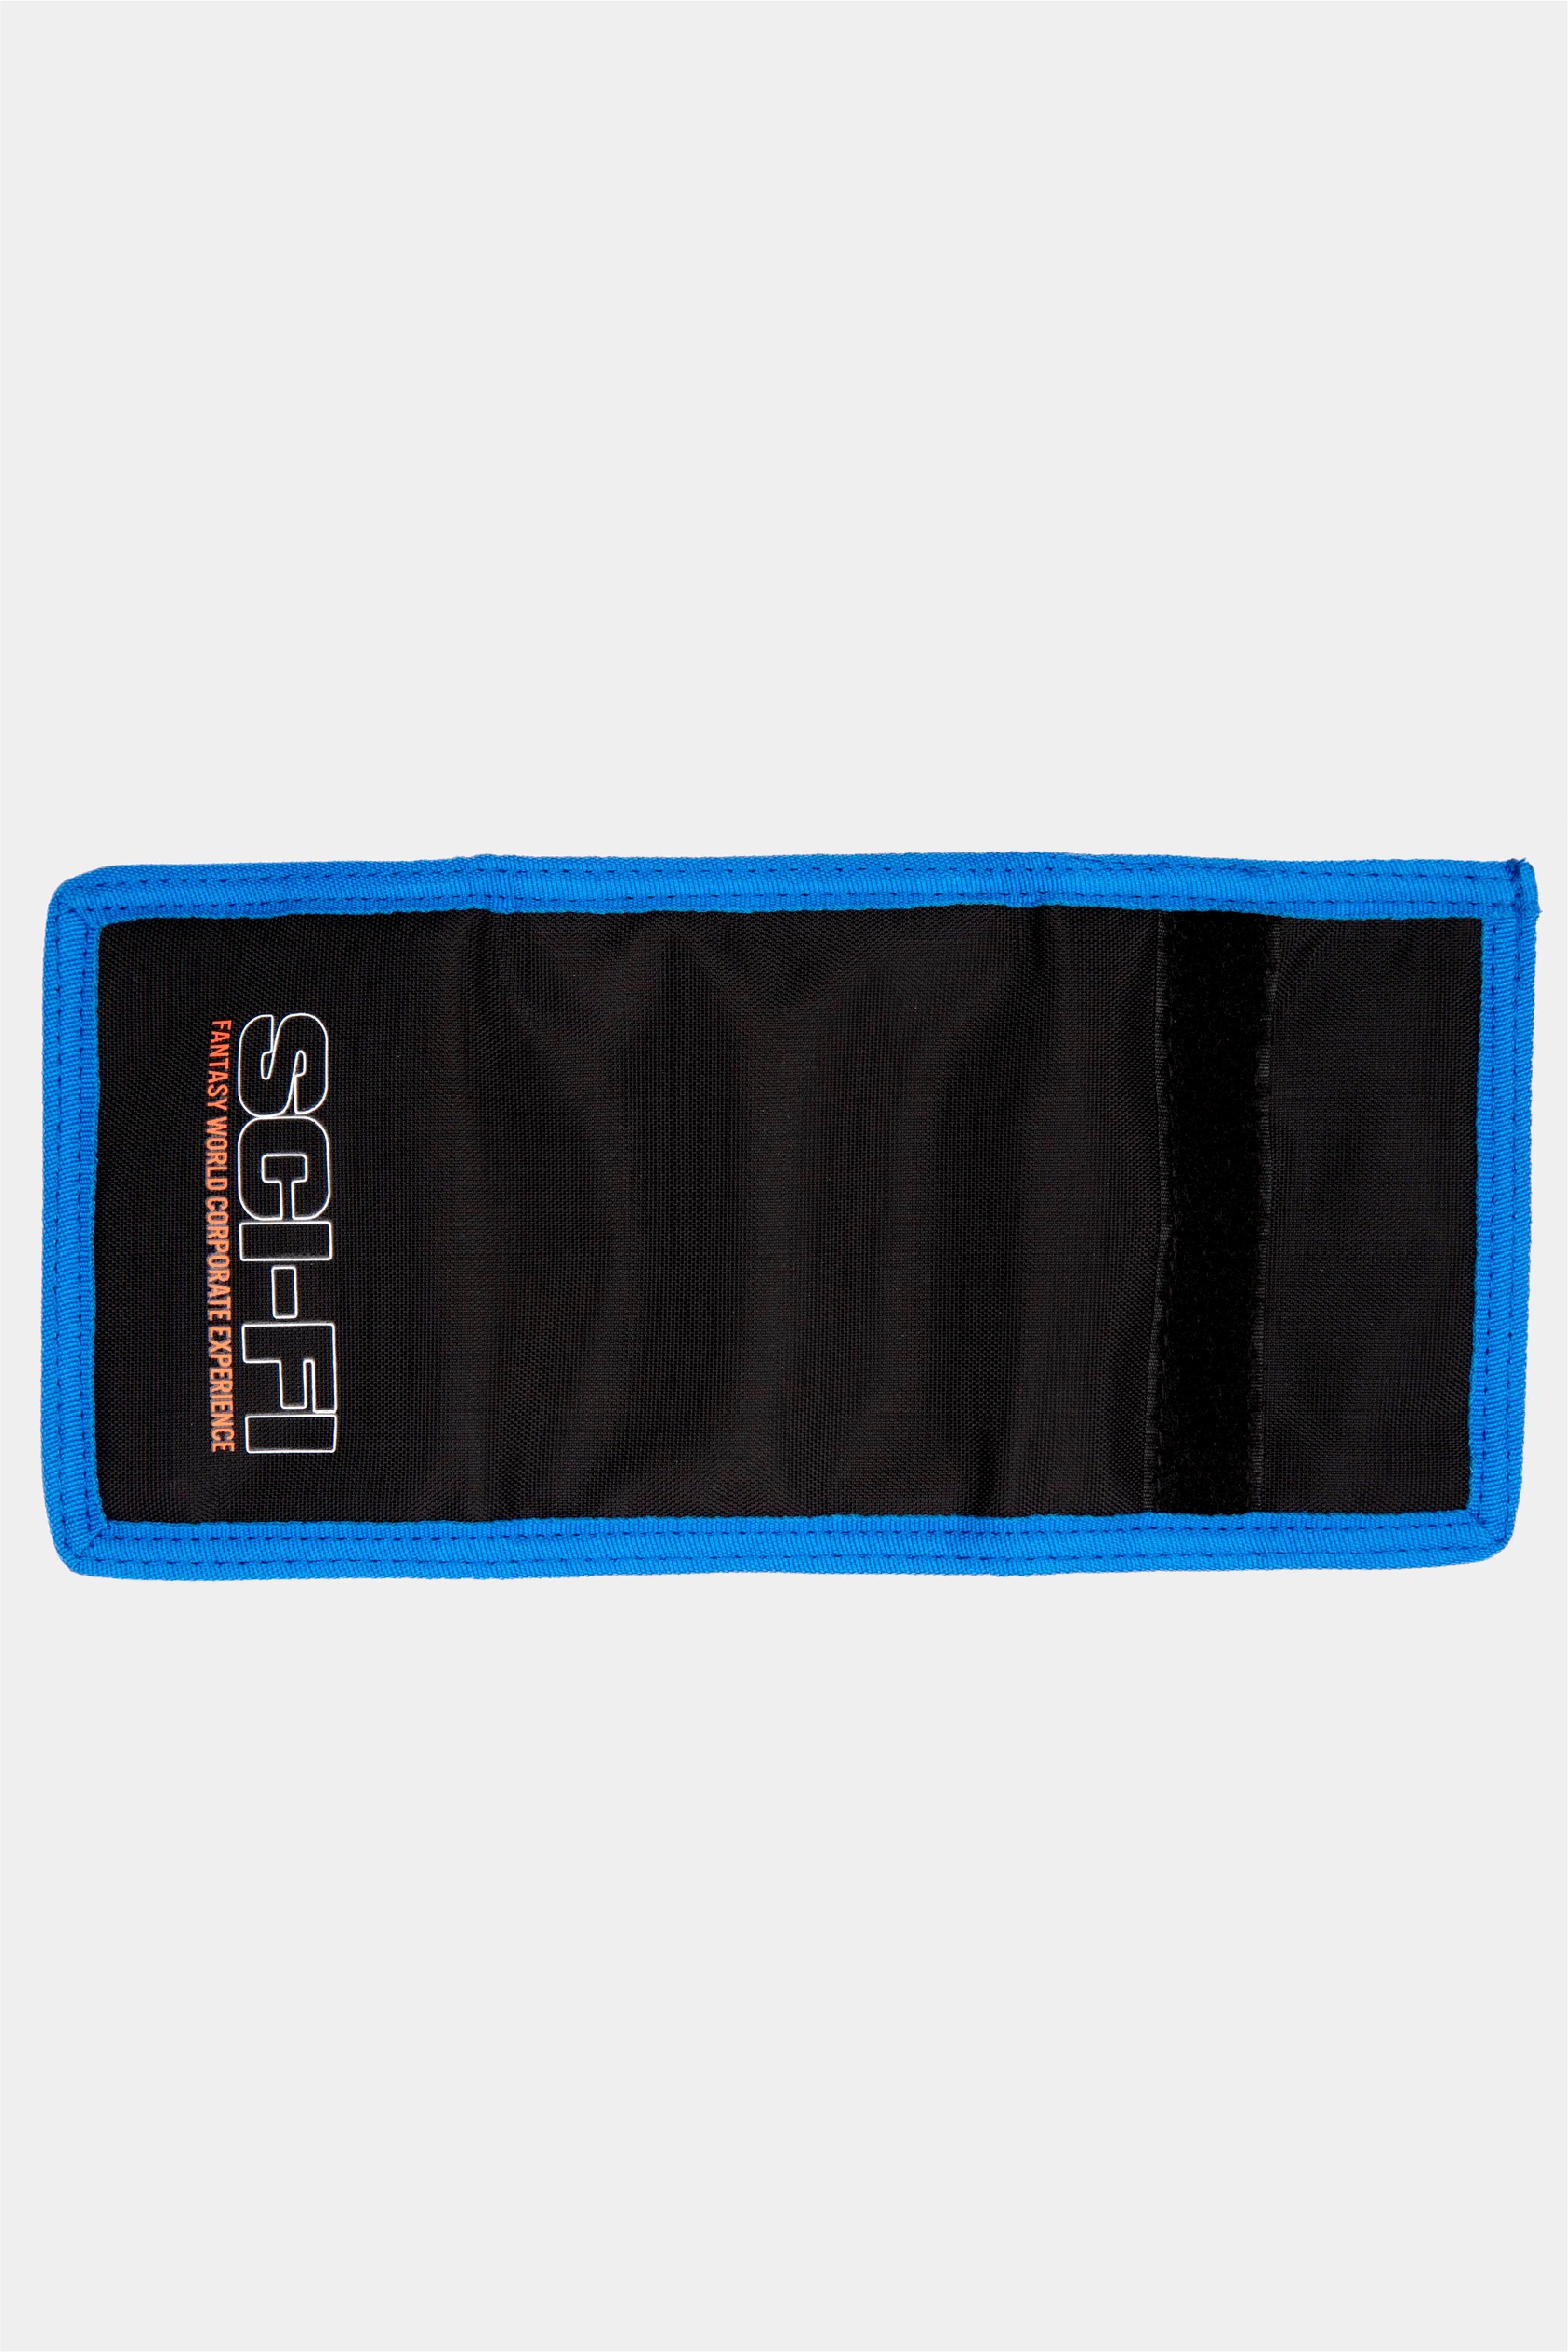 Selectshop FRAME - SCI-FI FANTASY Tri Fold Velcro Wallet All-accessories Concept Store Dubai